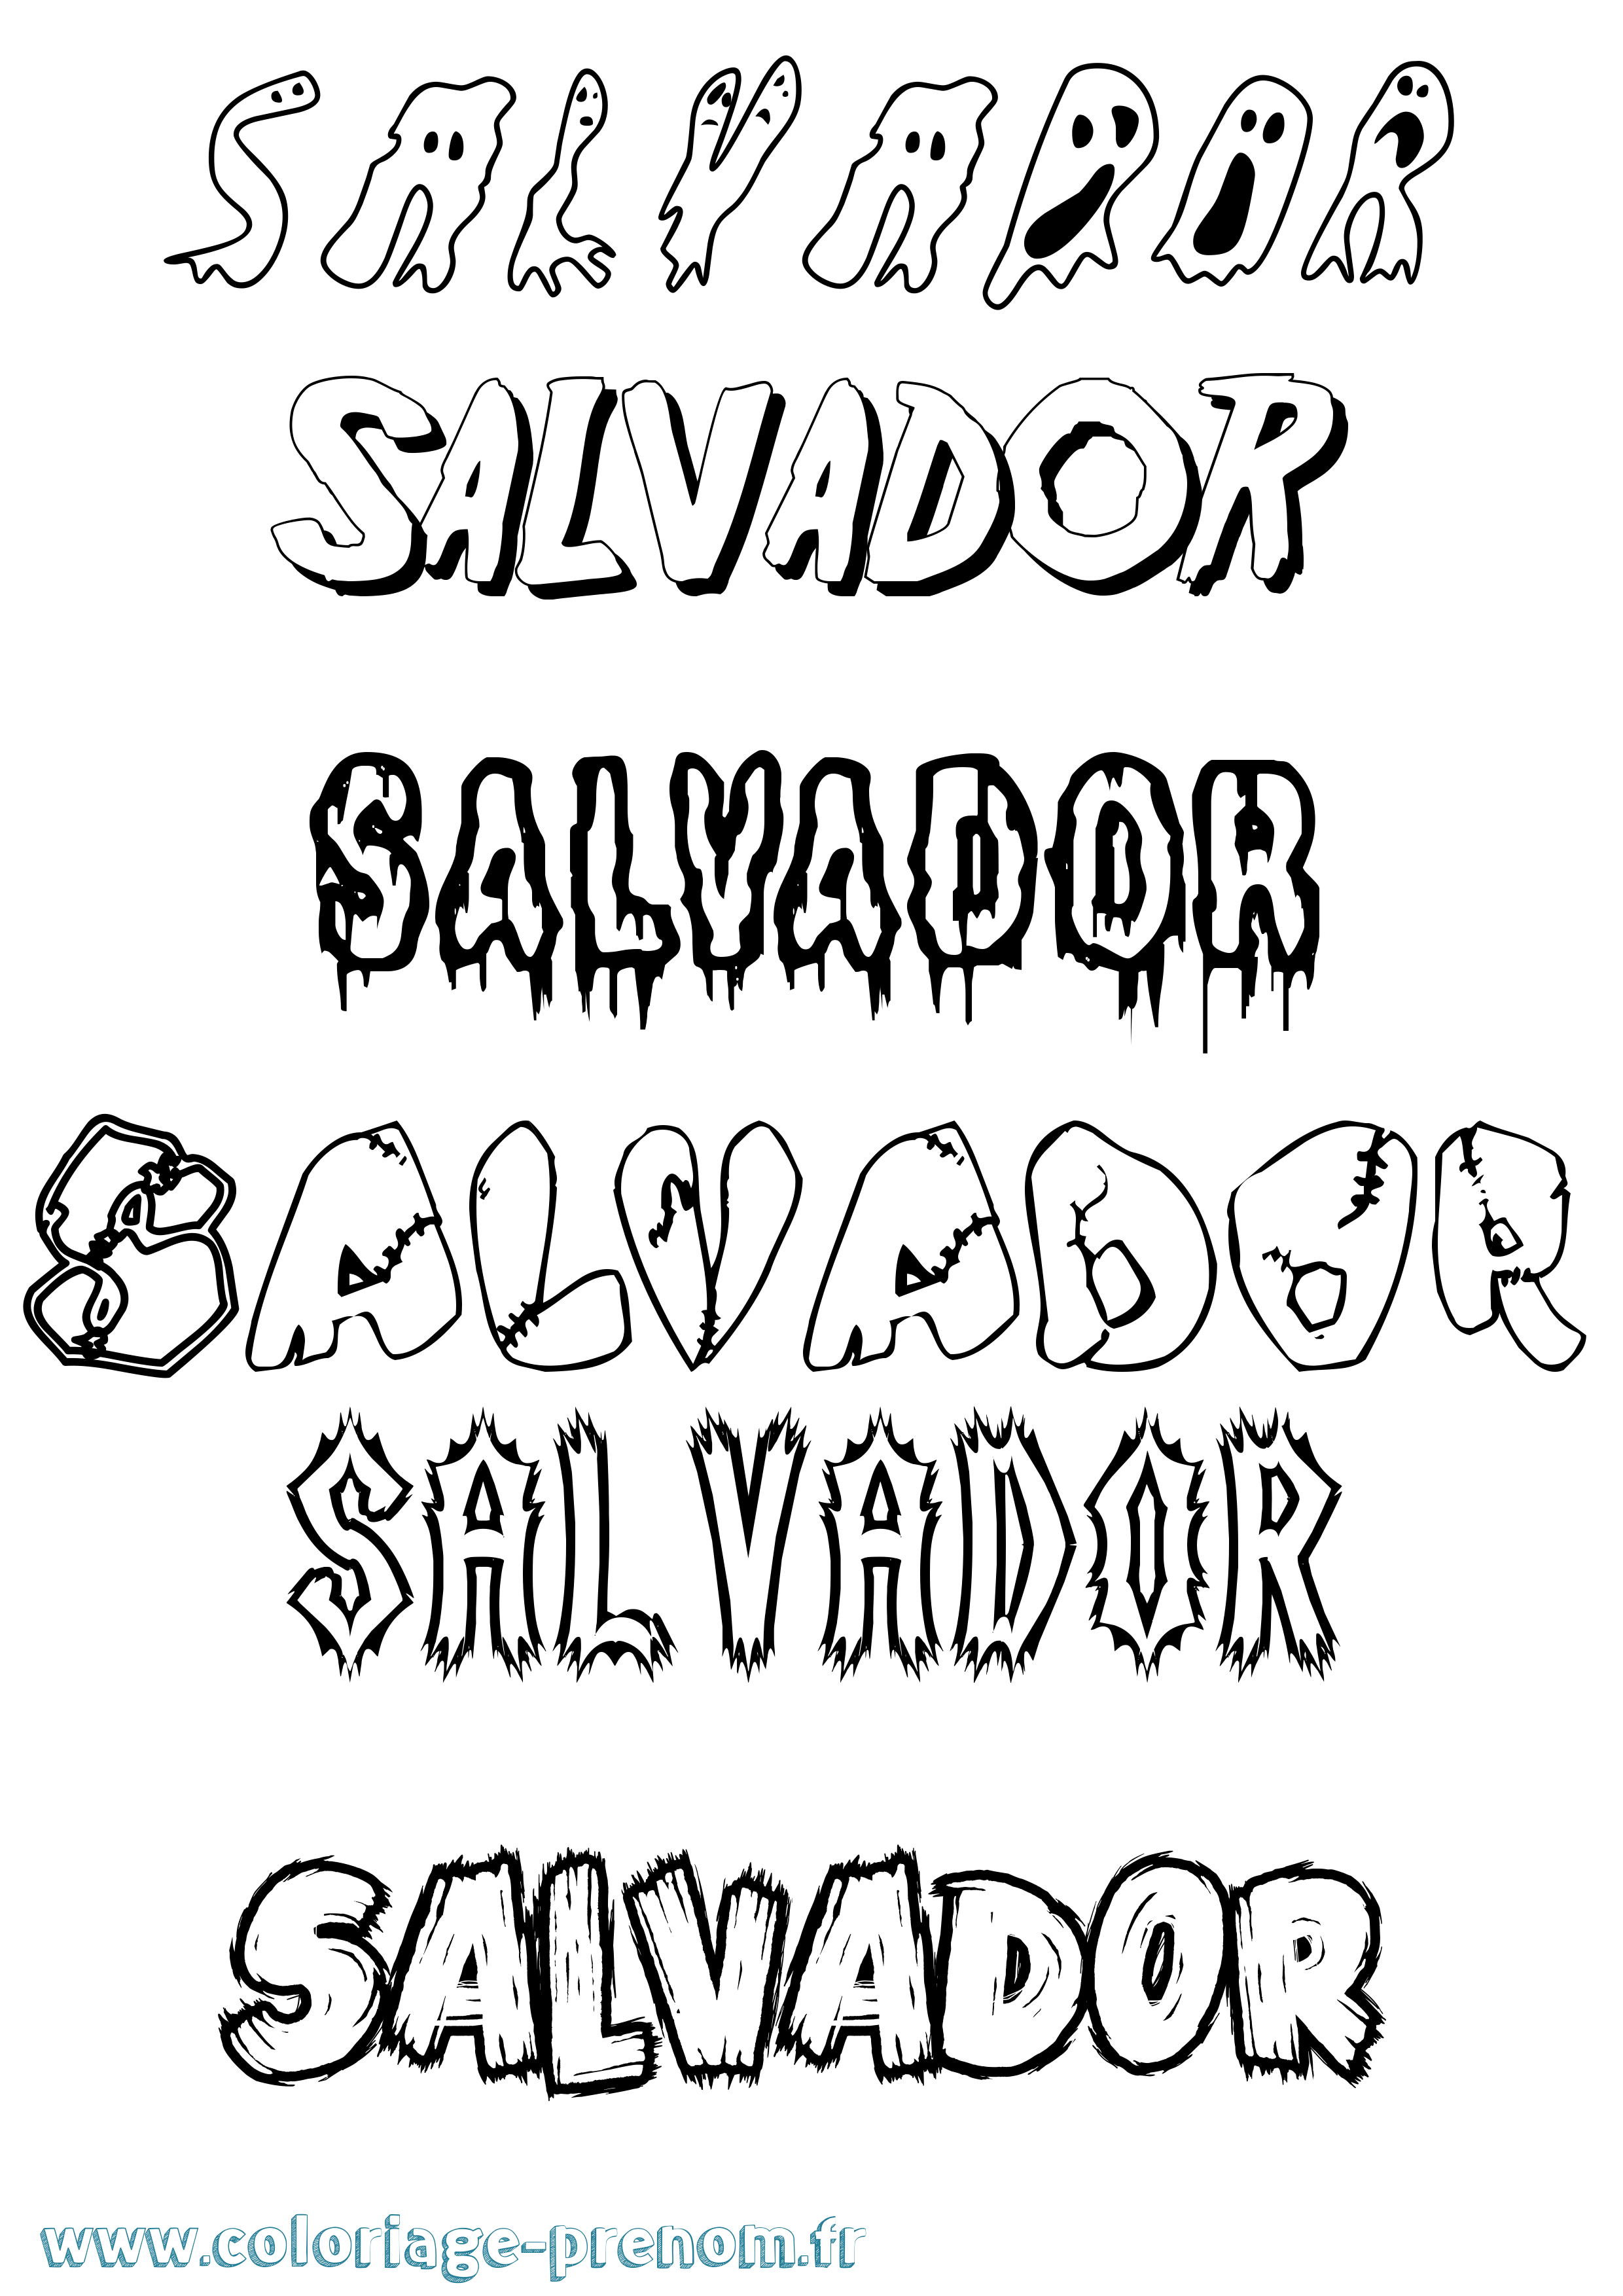 Coloriage prénom Salvador Frisson